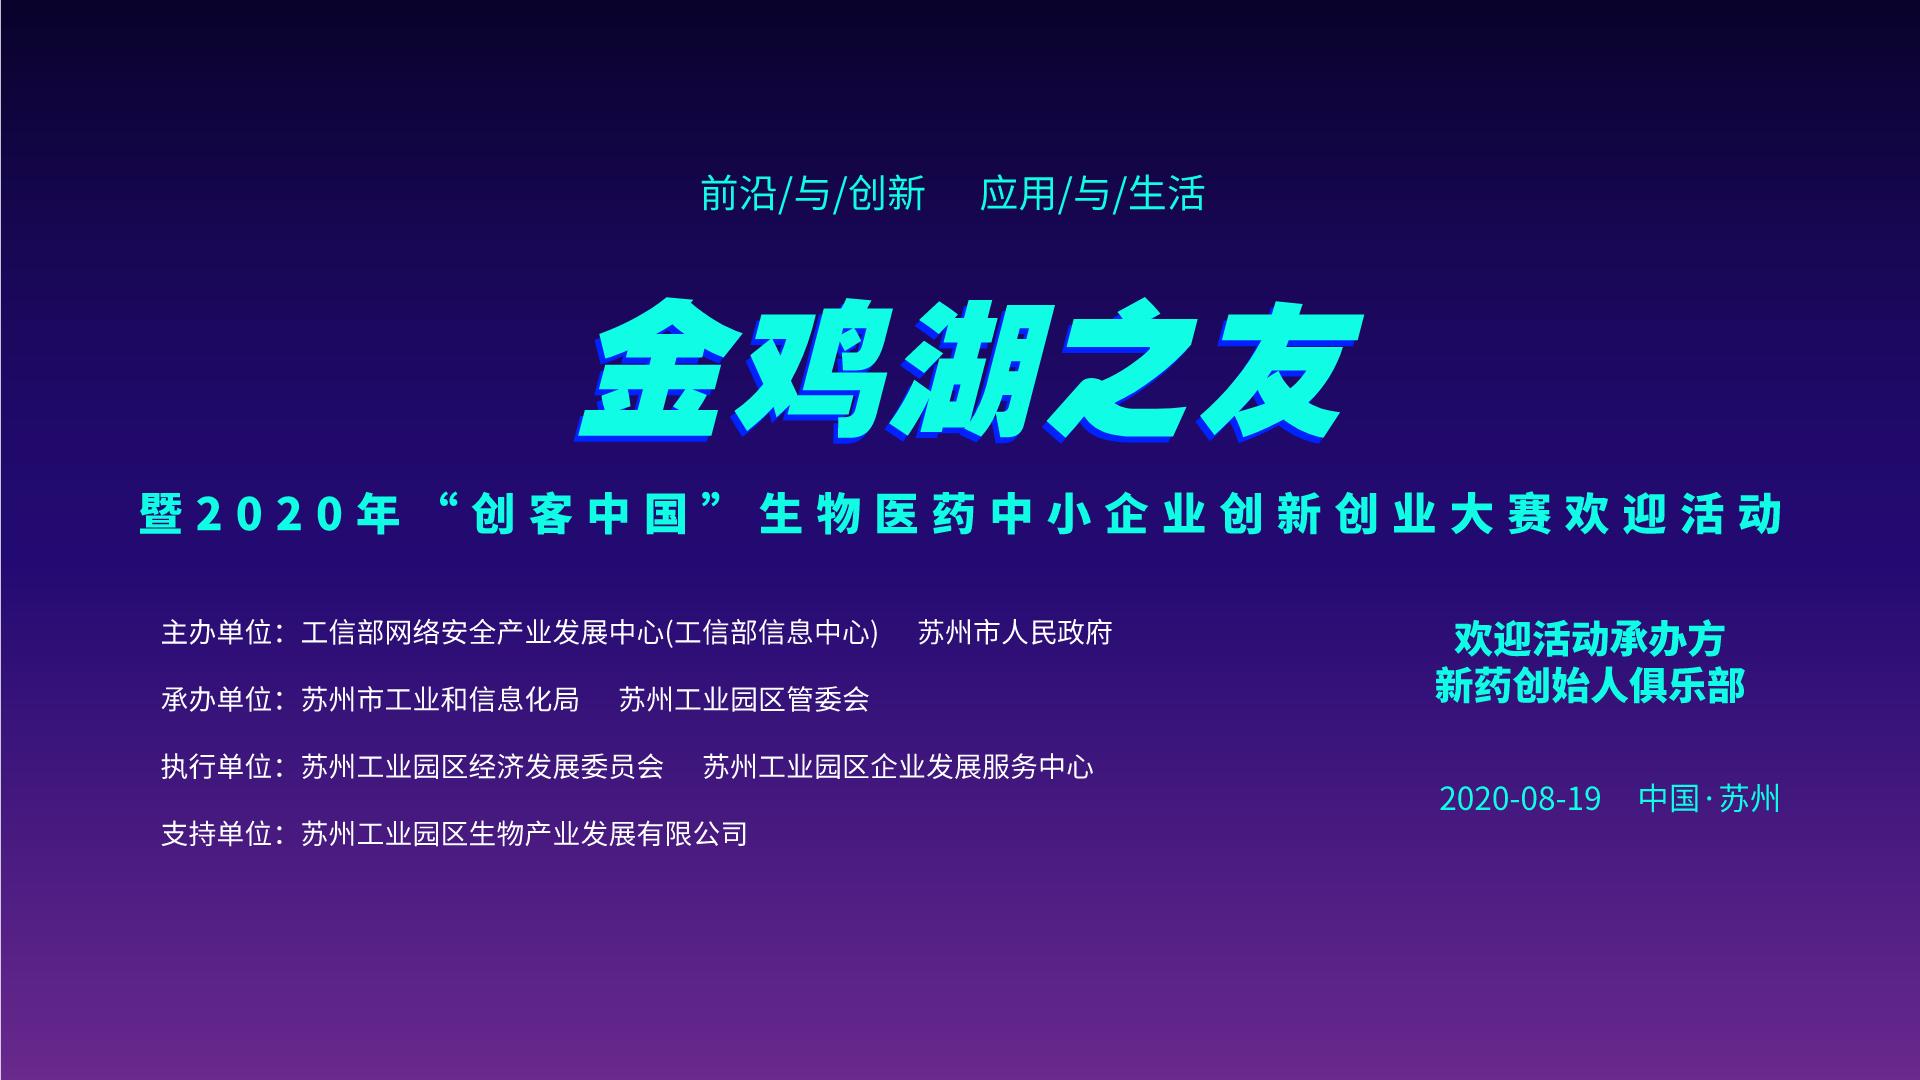 金鸡湖之友 | “创客中国”生物医药创新创业大赛欢迎分享会